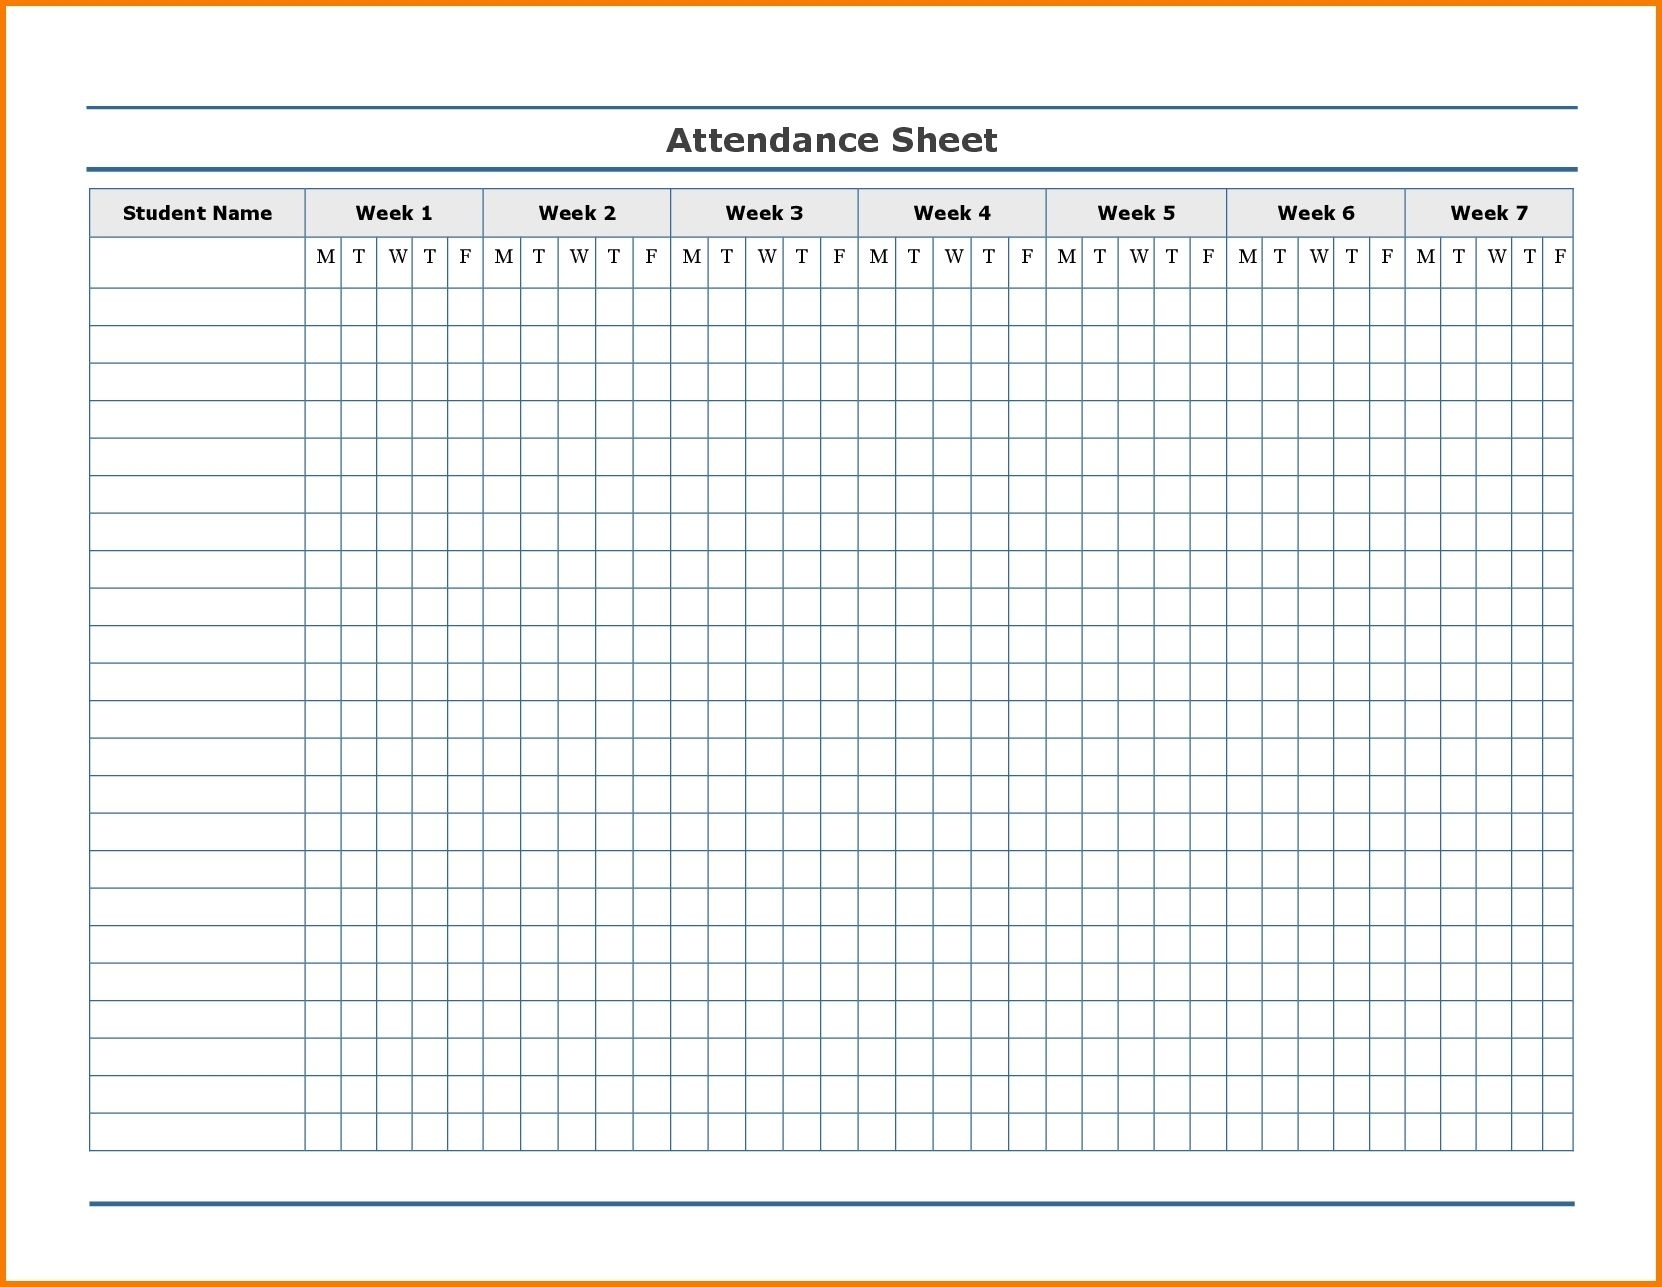 Free Employee Attendance Calendar | Employee Tracker regarding Free 2020 Employee Attendance Calendar